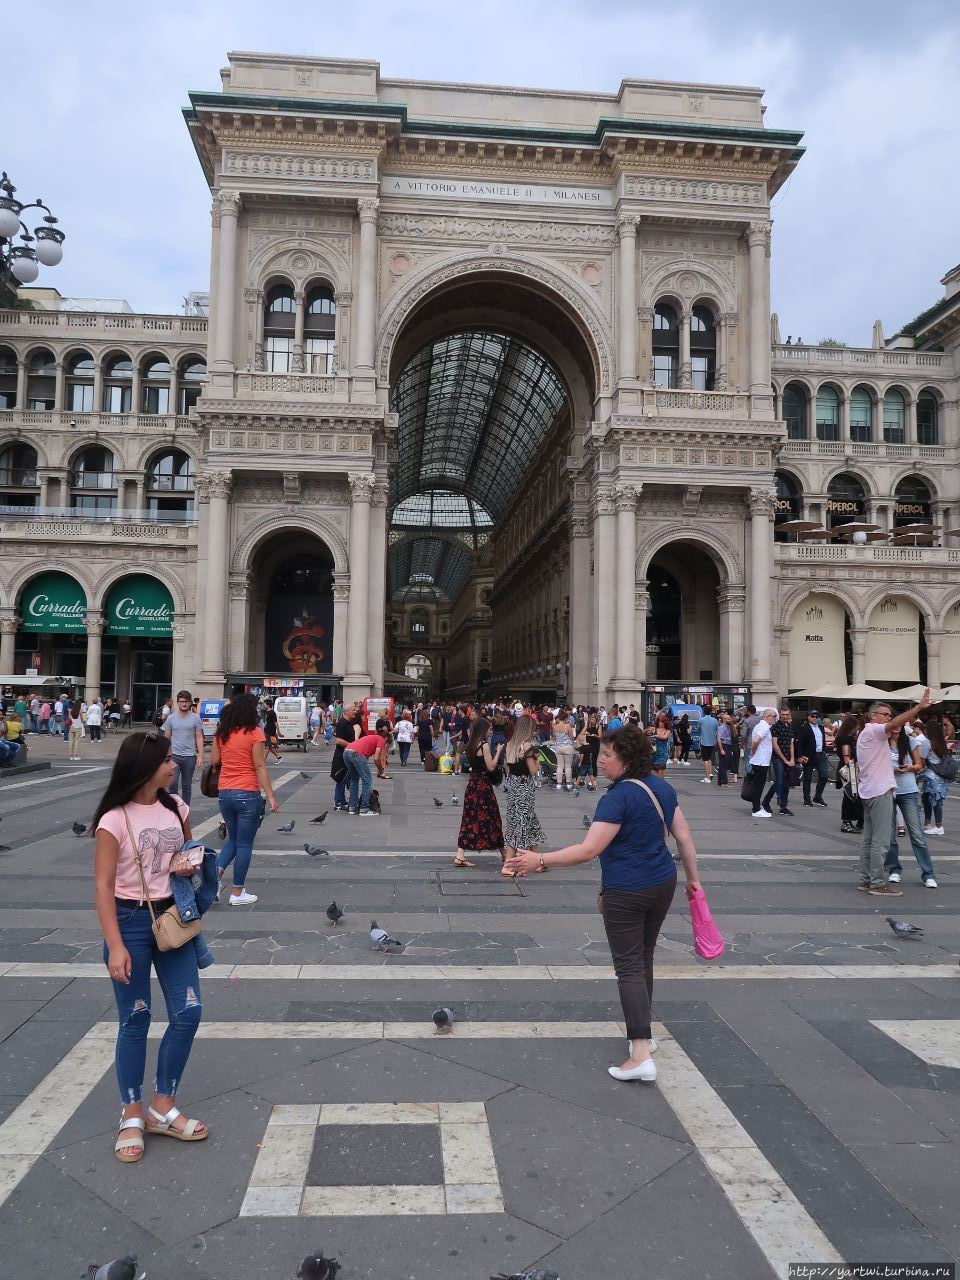 Завершаем экскурсию по Собору и далее направляемся к уникальной крытой торговой галерее Виктора Эммануила II. Милан, Италия